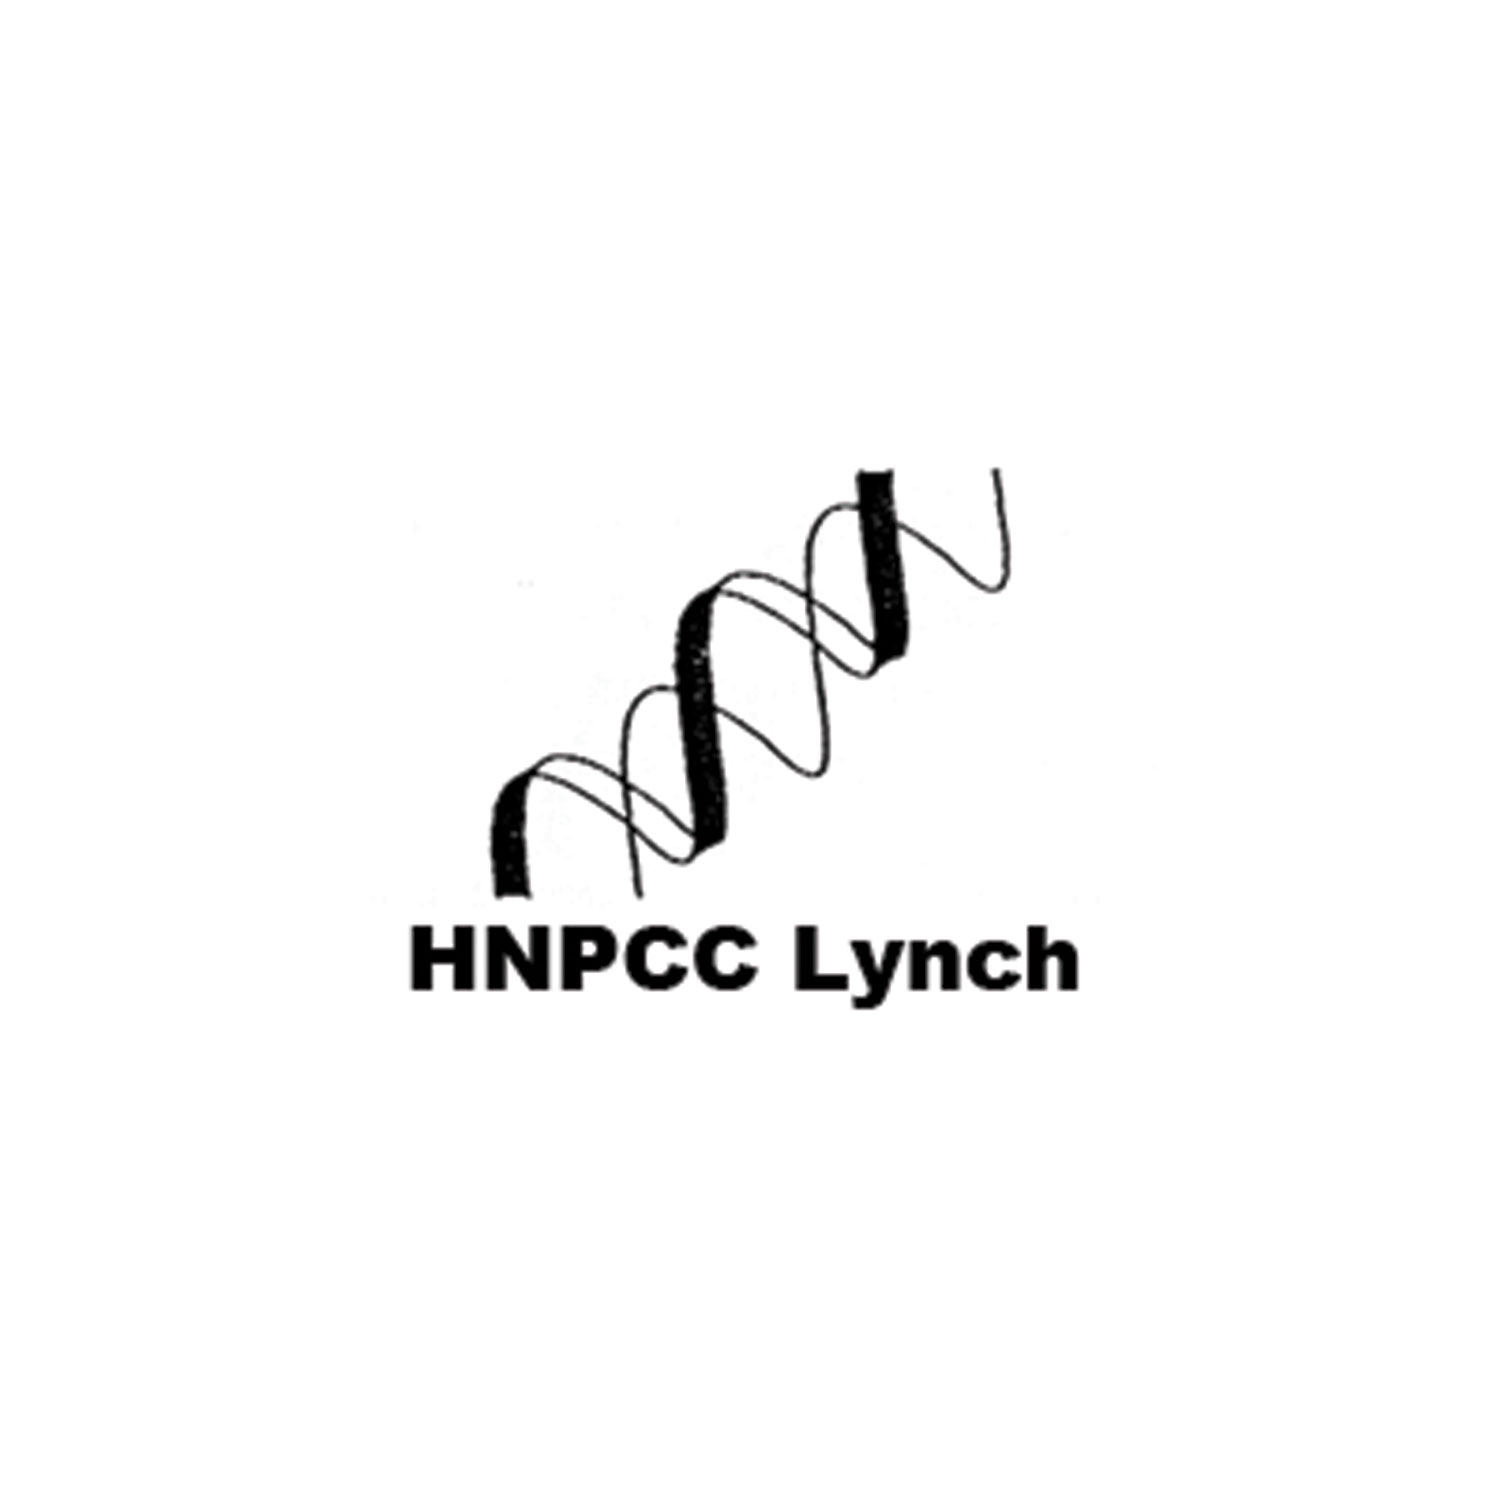 Logo association - HNPCC Lynch